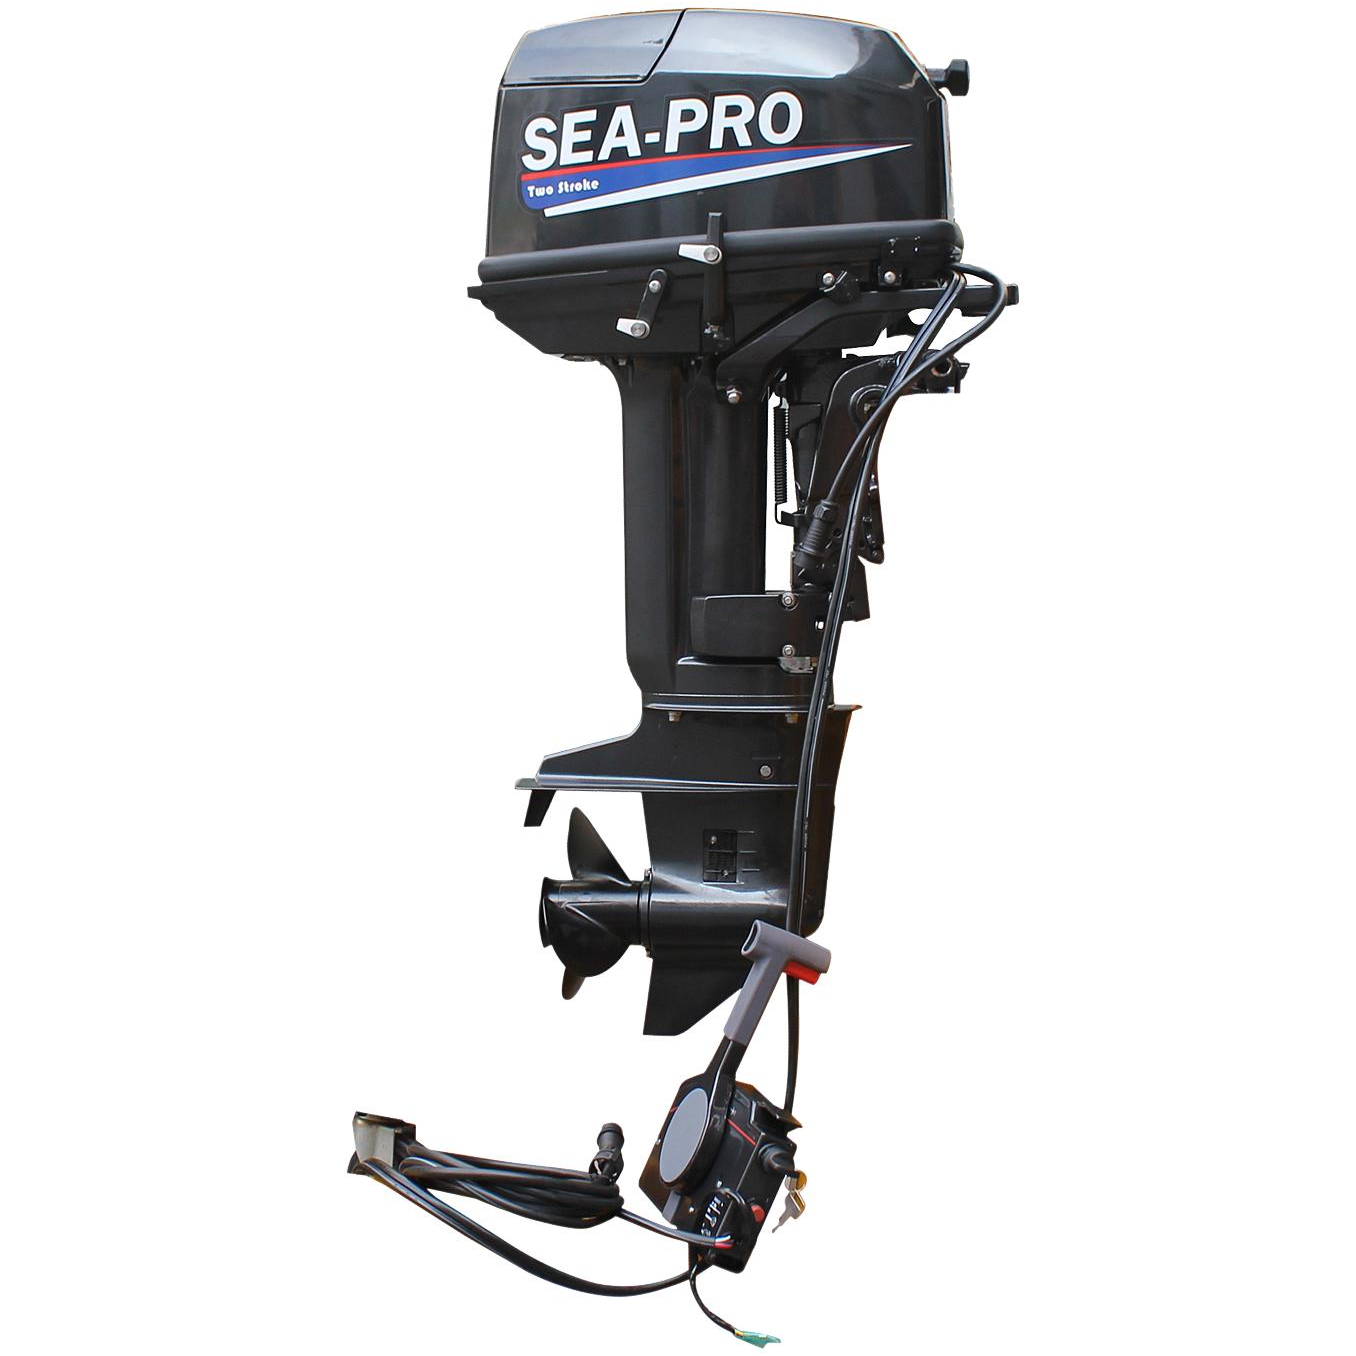 Лодочный мотор Sea-Pro t 30 s. Лодочный мотор Sea-Pro t 30se. Sea-Pro t 30s&e. Мотор Sea Pro 30 s&e. Сайт сиа про